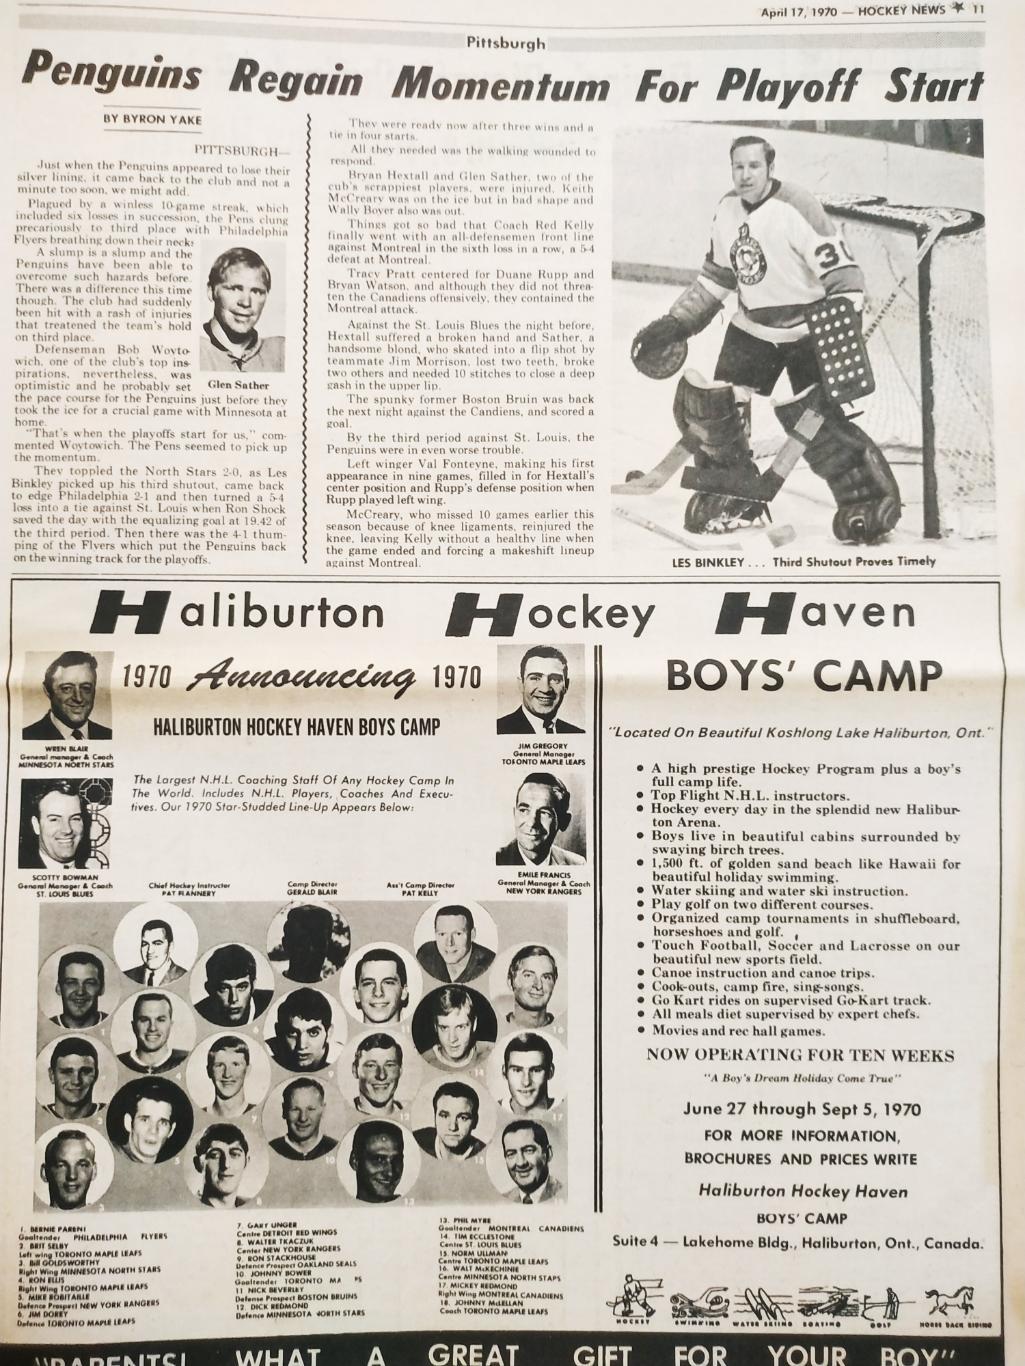 ХОККЕЙ ЖУРНАЛ ЕЖЕНЕДЕЛЬНИК НХЛ НОВОСТИ ХОККЕЯ APR.17 1970 NHL THE HOCKEY NEWS 4